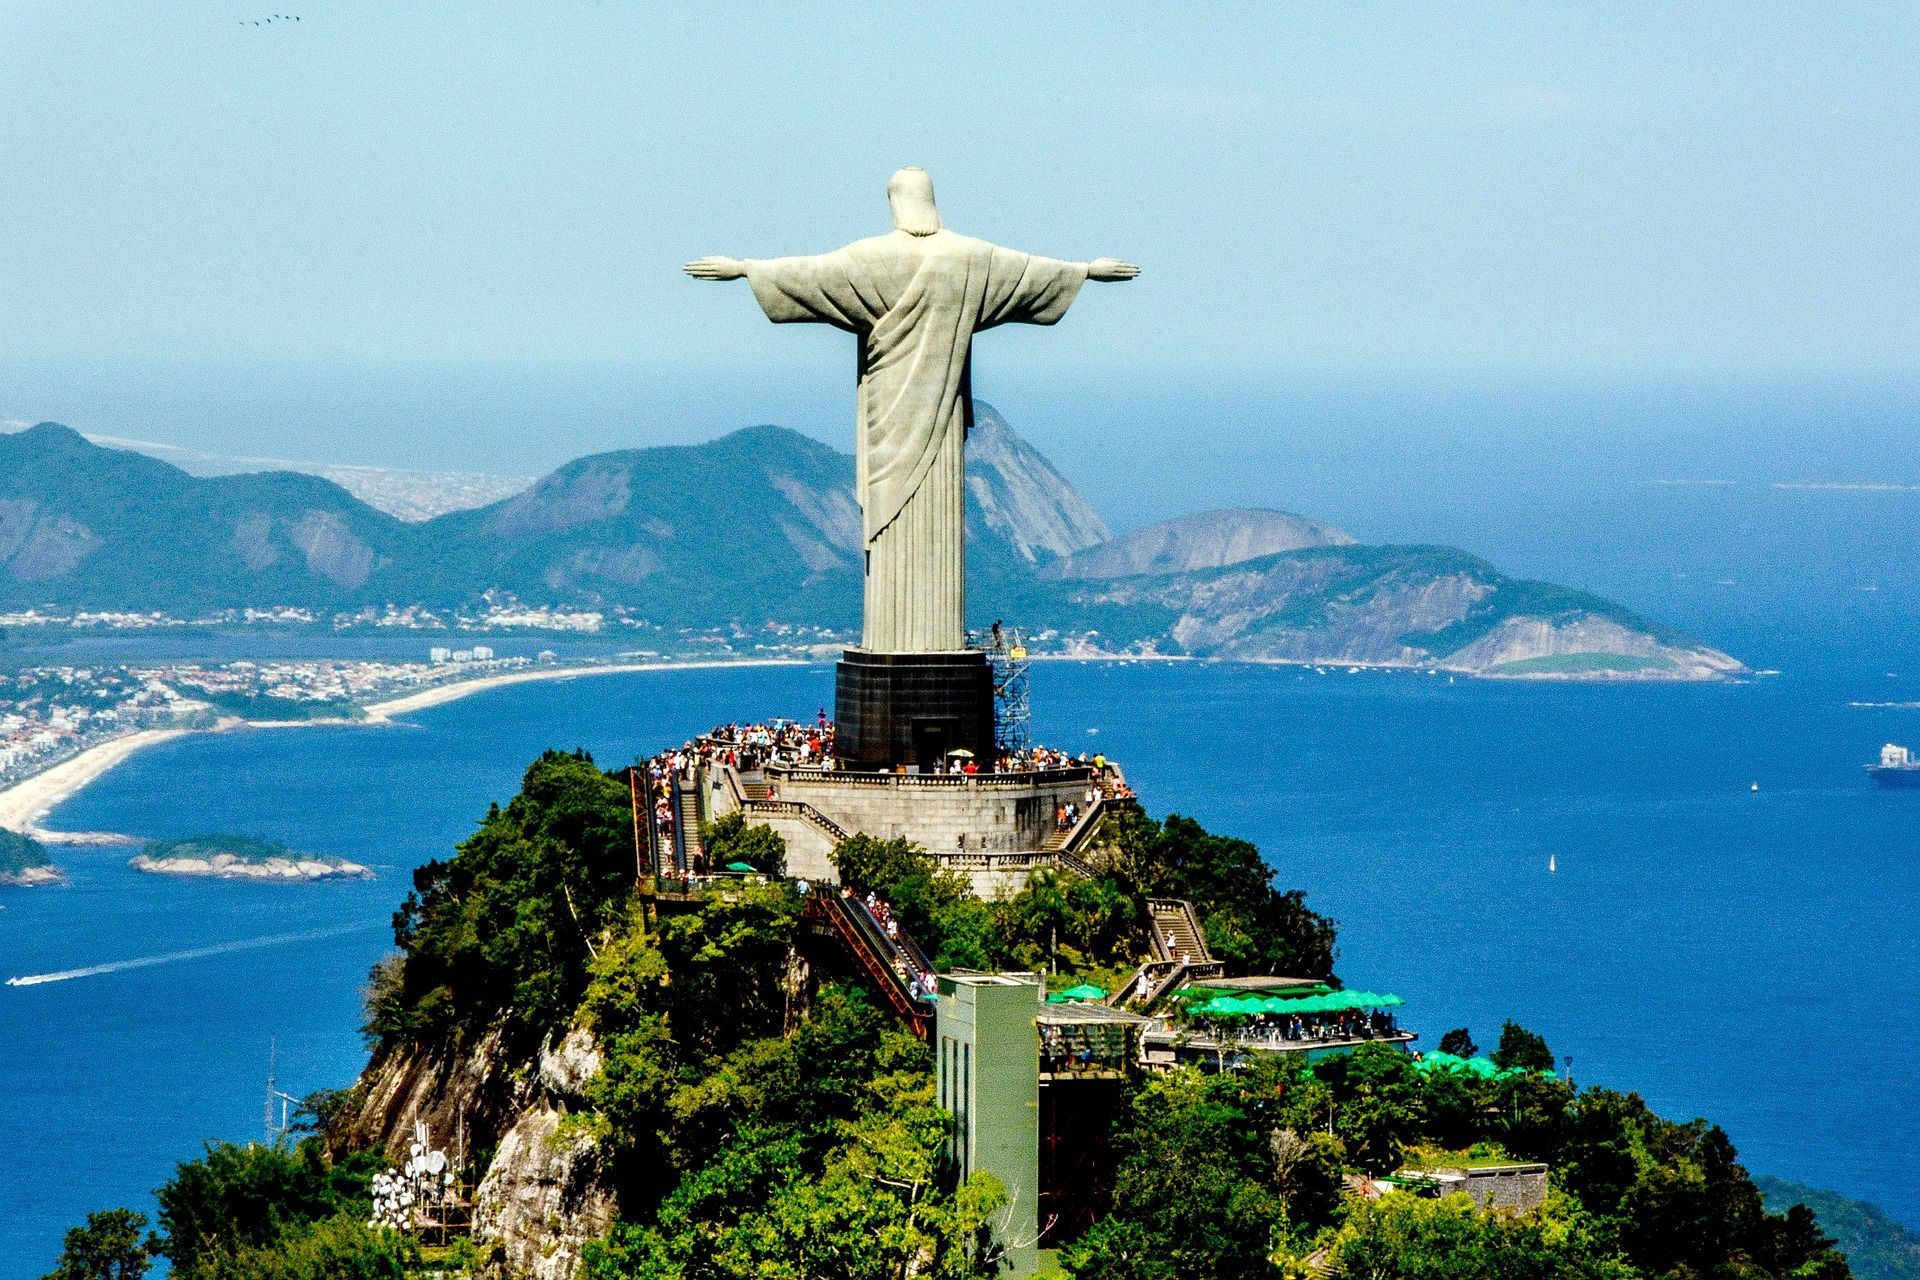 Christ the Redeemer statue on Corcovado mountain overlooking Rio de Janeiro